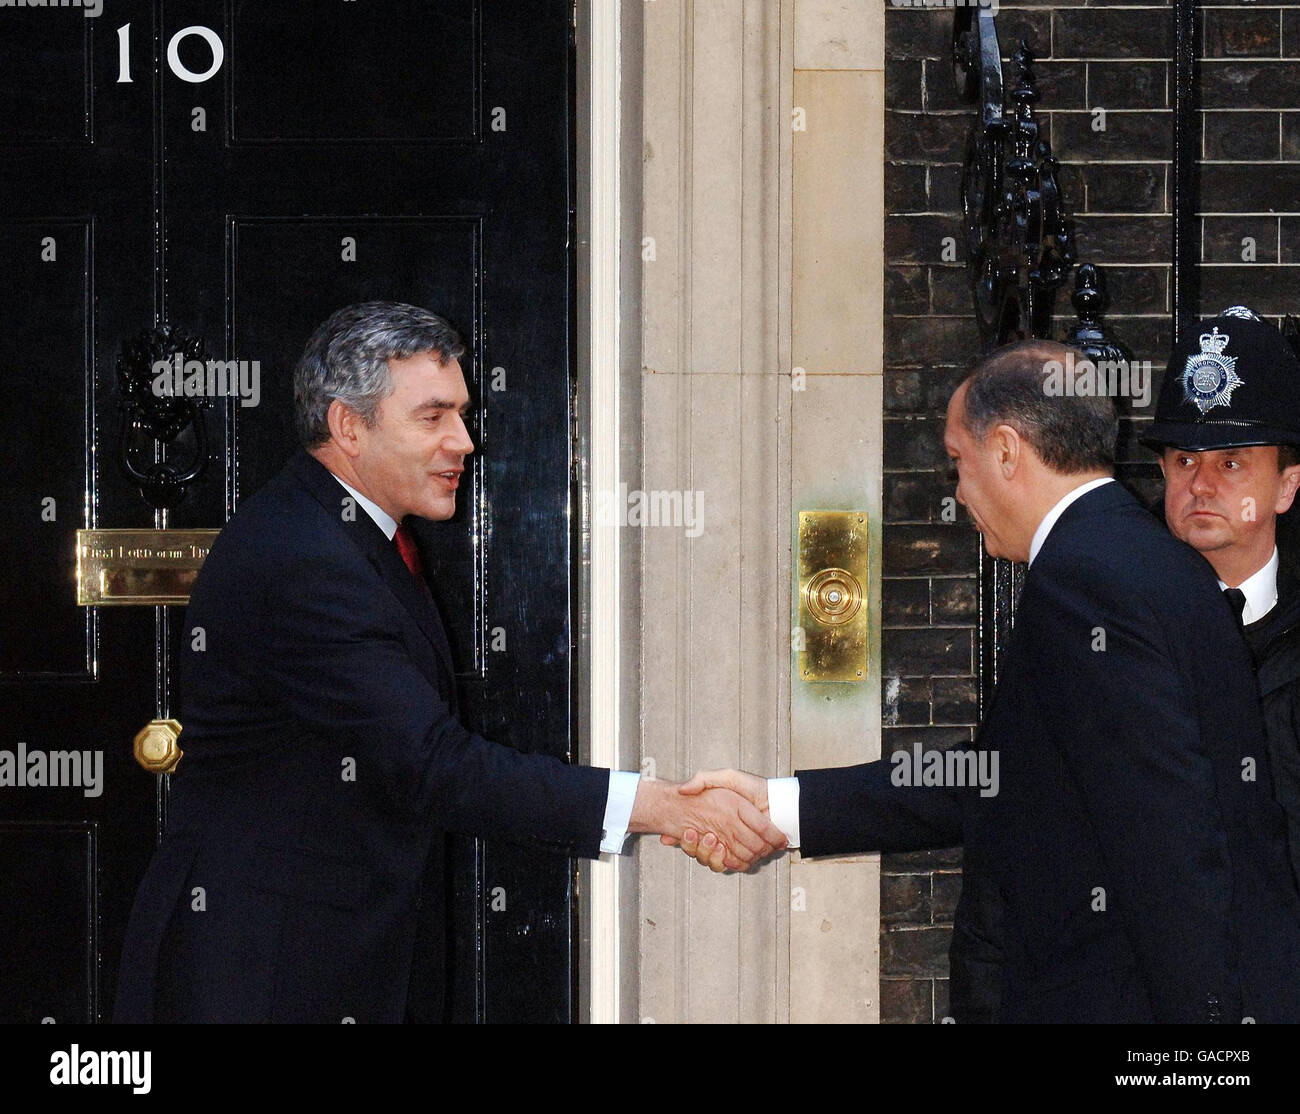 Der britische Premierminister Gordon Brown schüttelt sich heute Morgen mit seinem türkischen Amtskollegen Recep Tayyip Erdogan, außerhalb der Downing Street Nr. 10, die Hände. Stockfoto